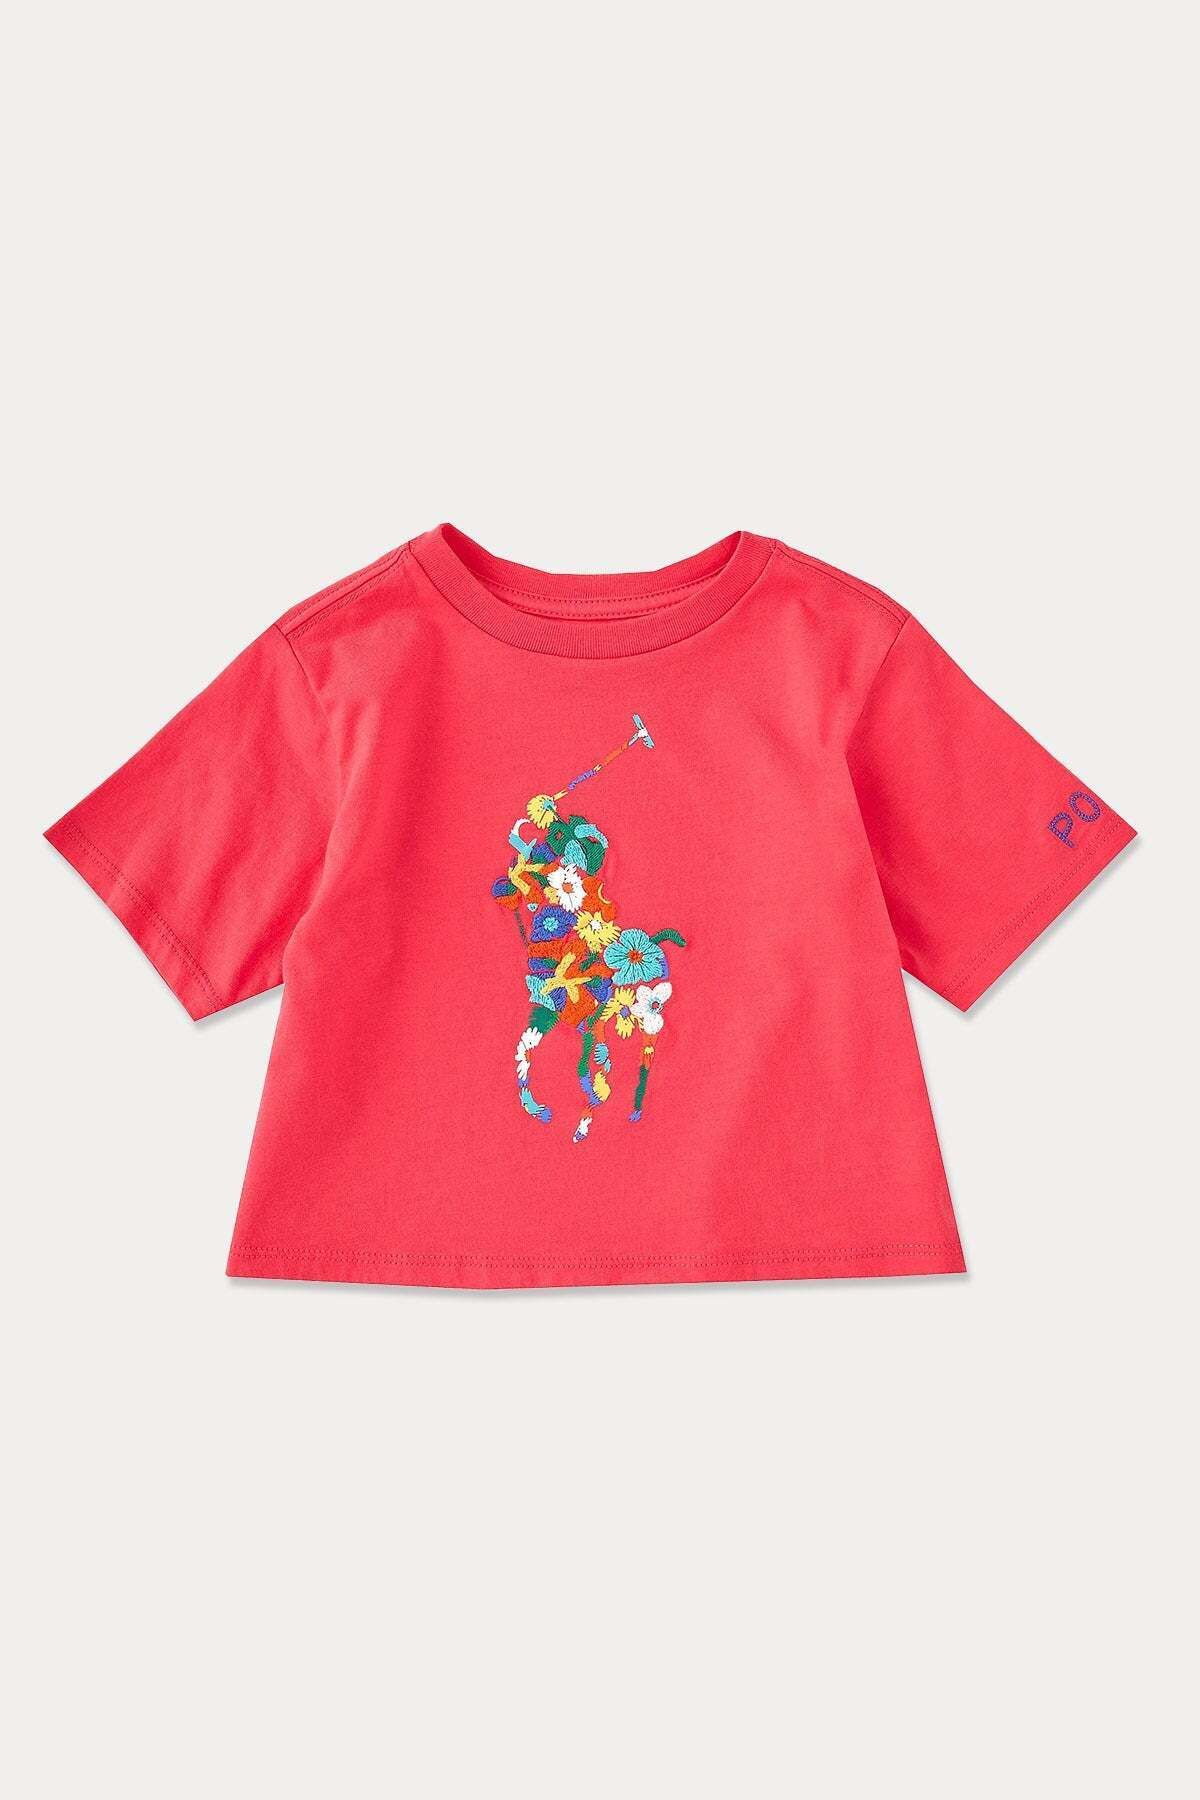 Ralph Lauren 2-5 Yaş Kız Çocuk Big Pony Logolu T-shirt 2y / Pembe